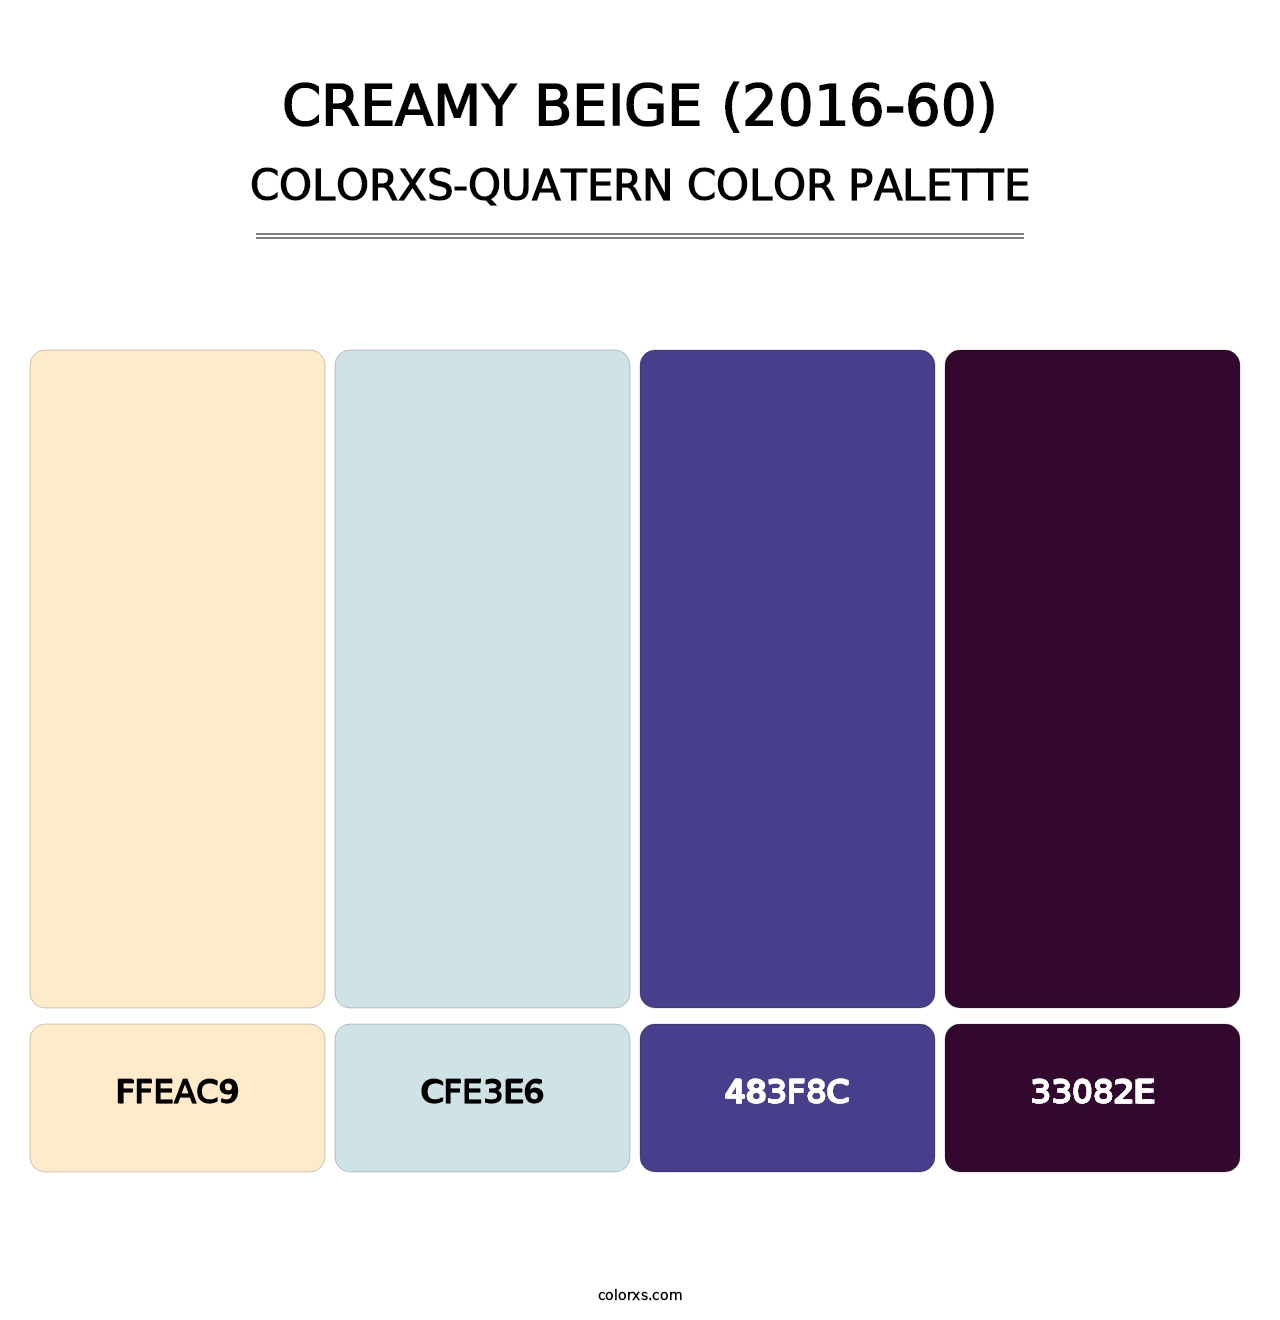 Creamy Beige (2016-60) - Colorxs Quatern Palette